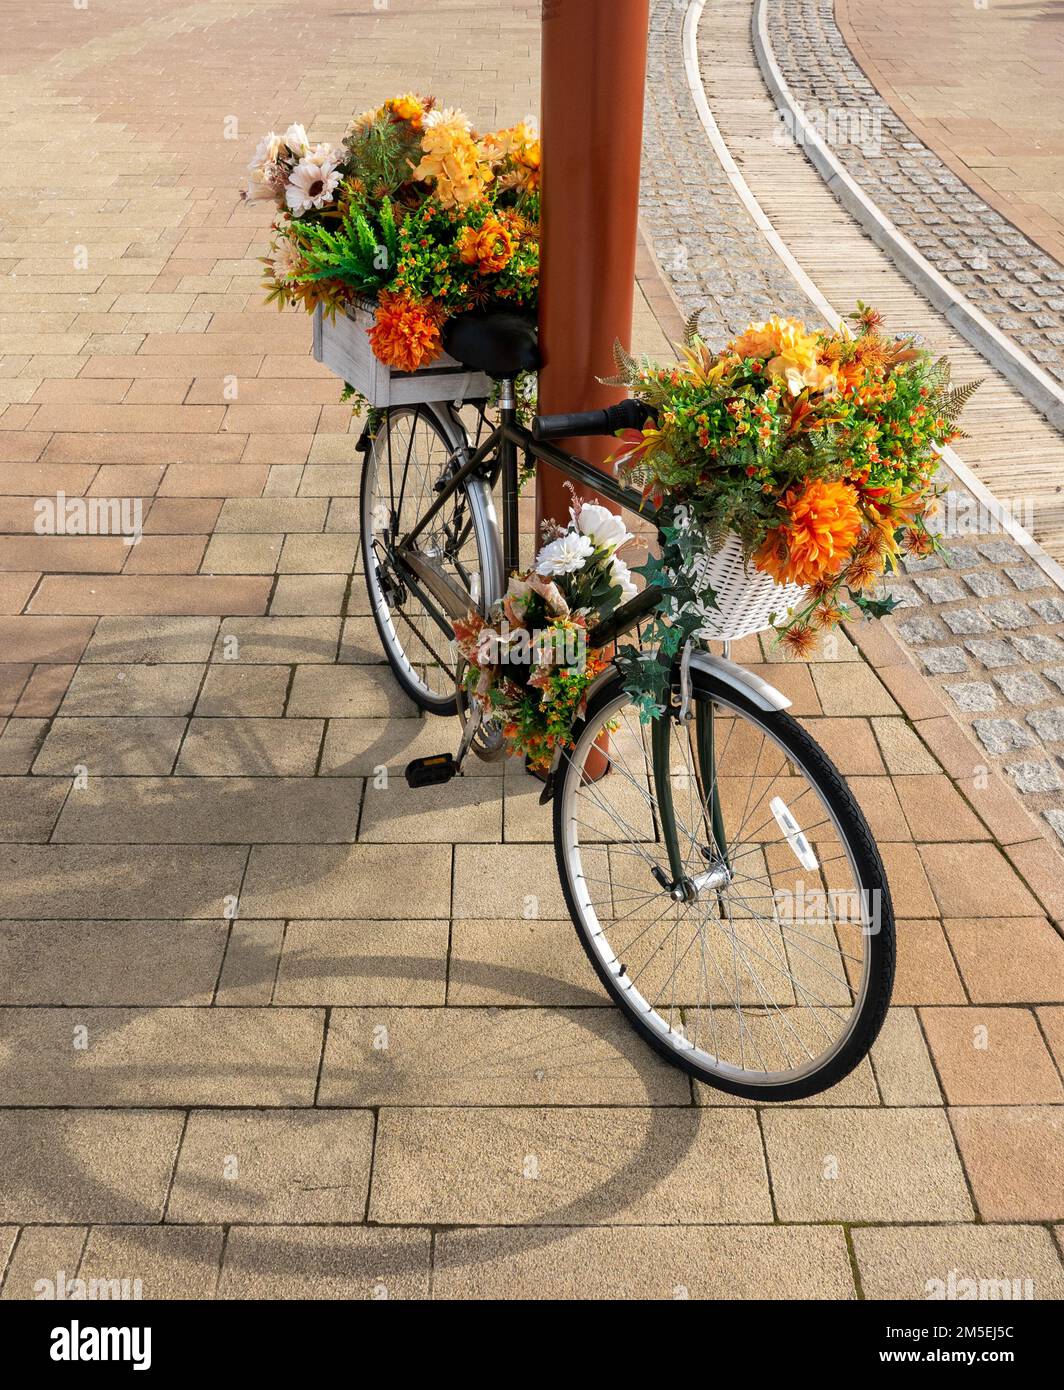 Altes Fahrrad, das für eine Blumenausstellung in einem Einkaufszentrum genutzt wird Stockfoto